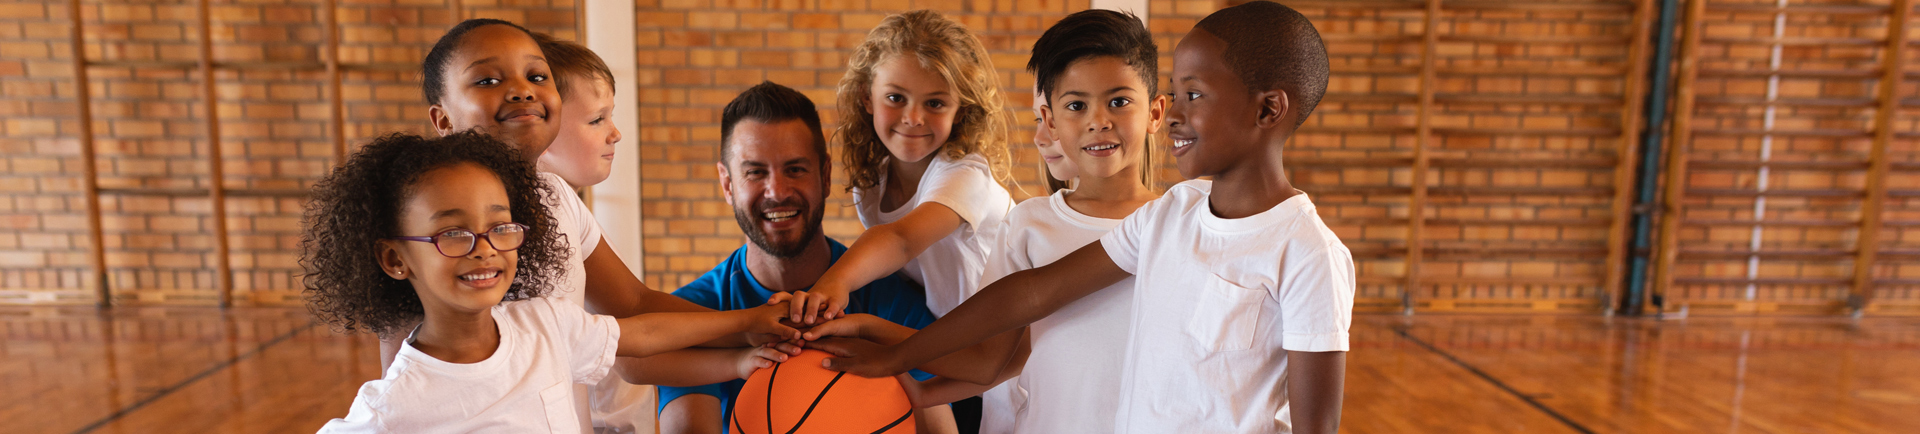 Jovens e treinador com as mãos à volta de uma bola de basquetebol